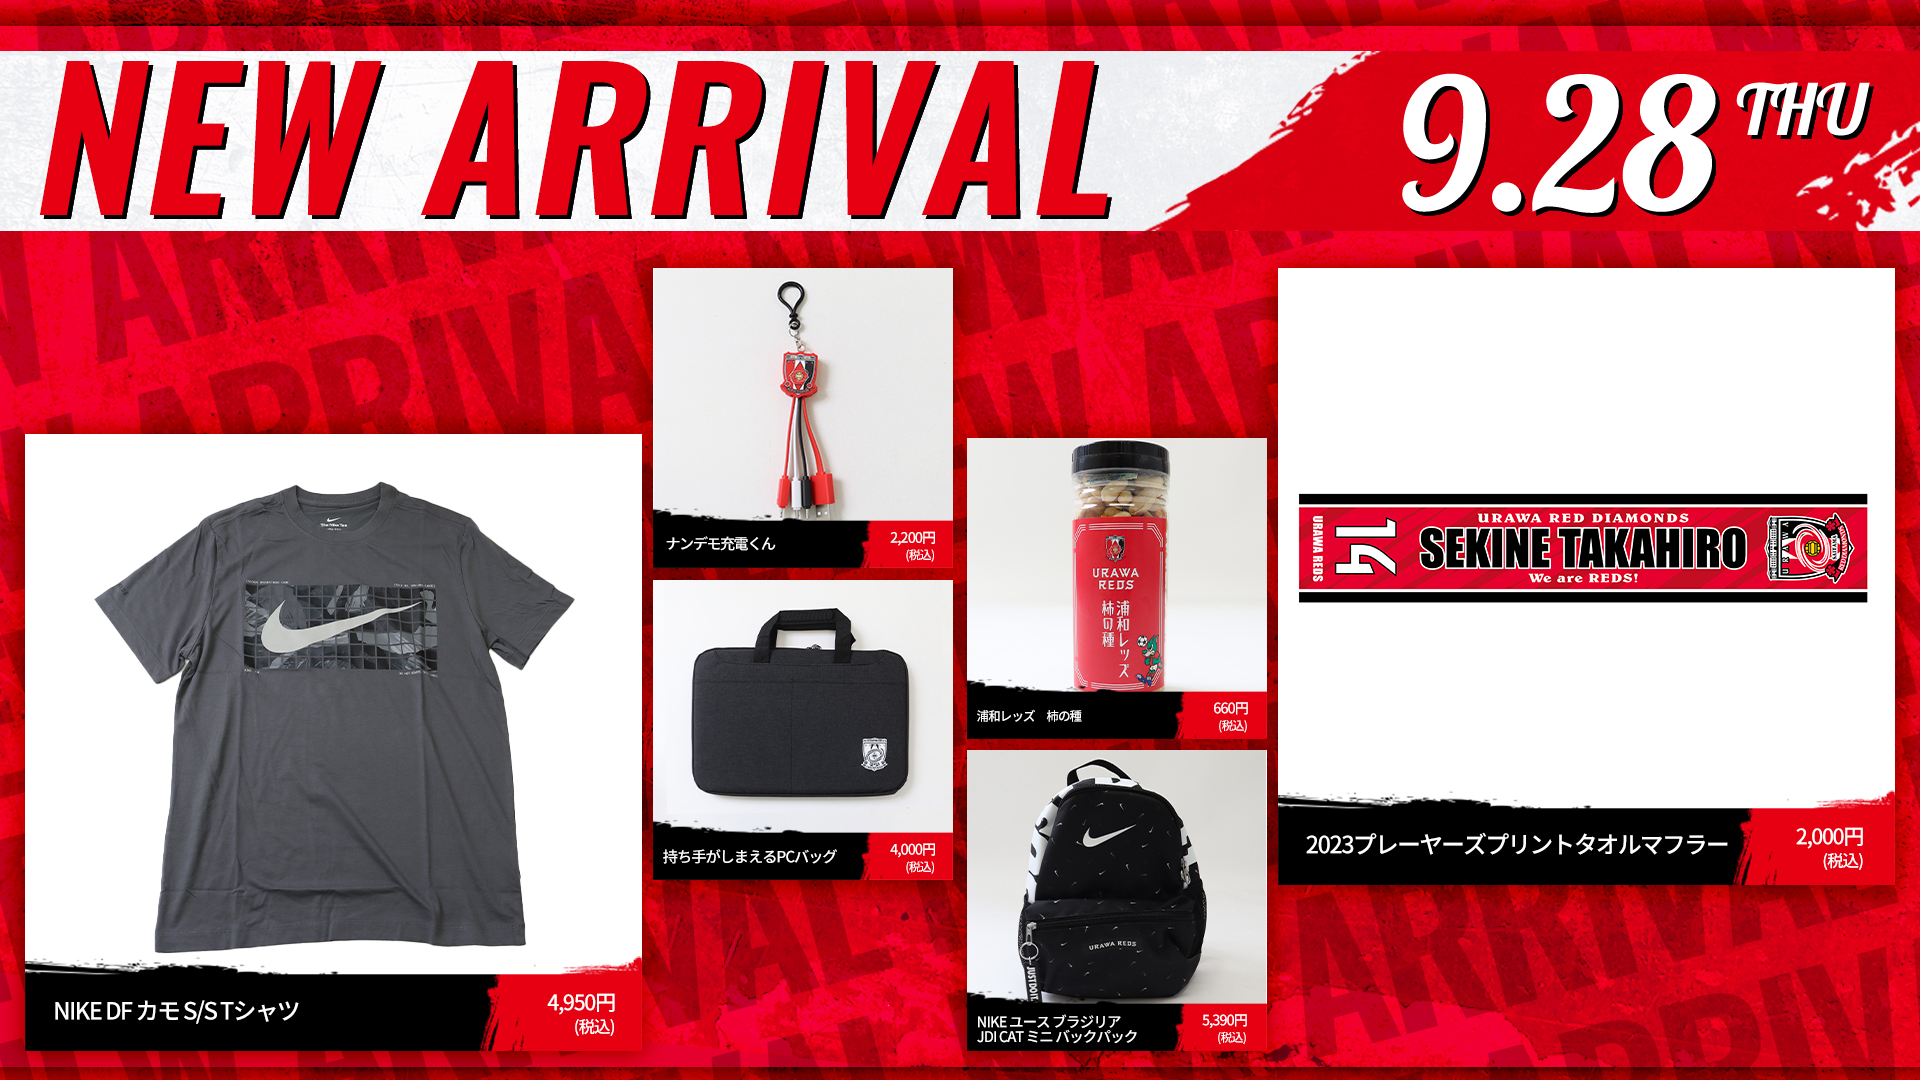 9/28(木)18時から 新商品発売! | URAWA RED DIAMONDS OFFICIAL WEBSITE